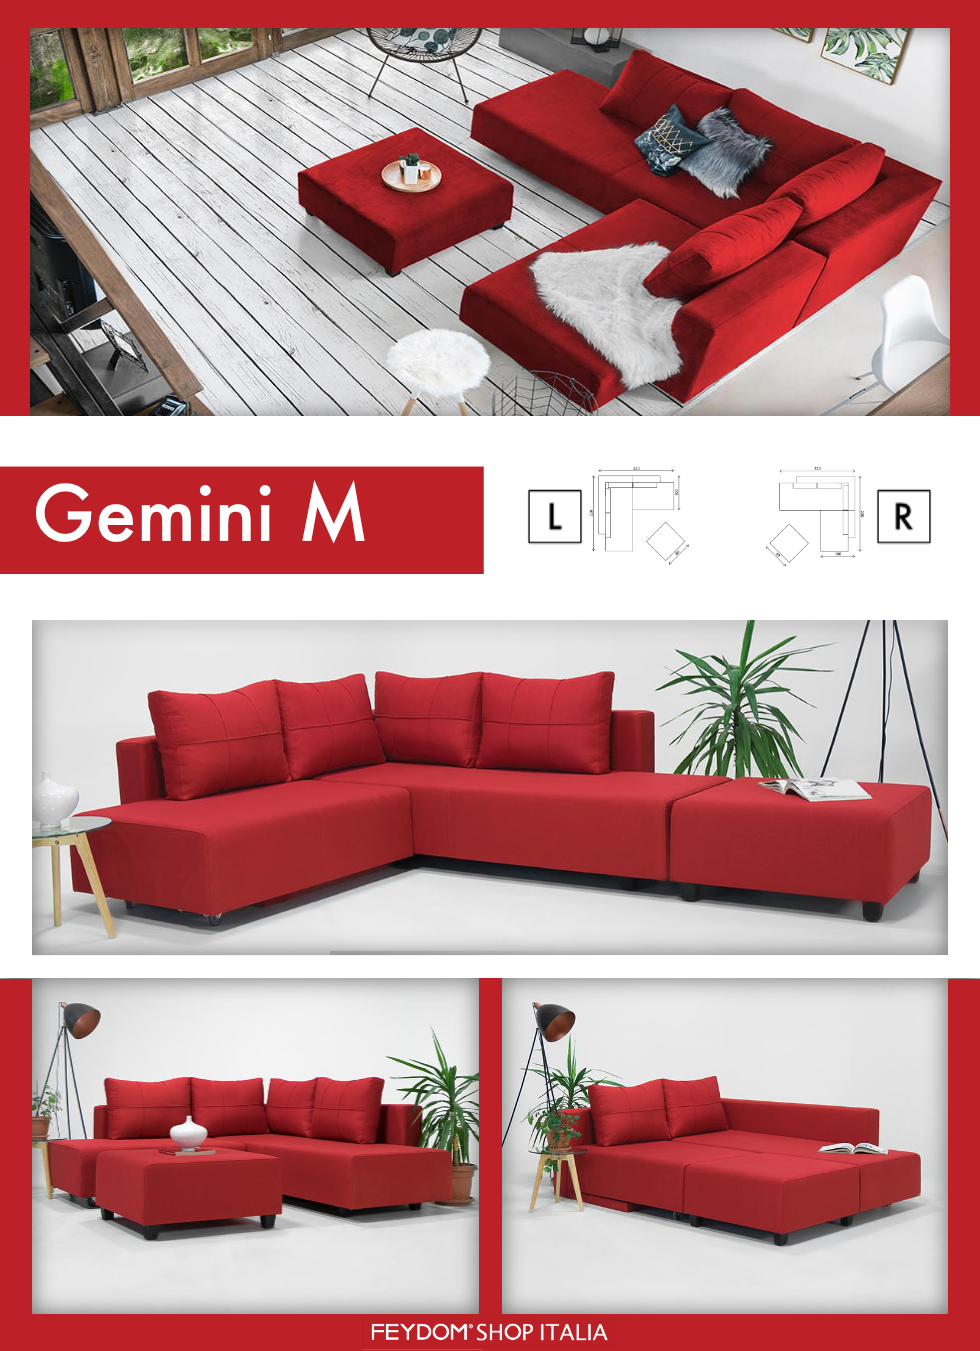 Gemini M